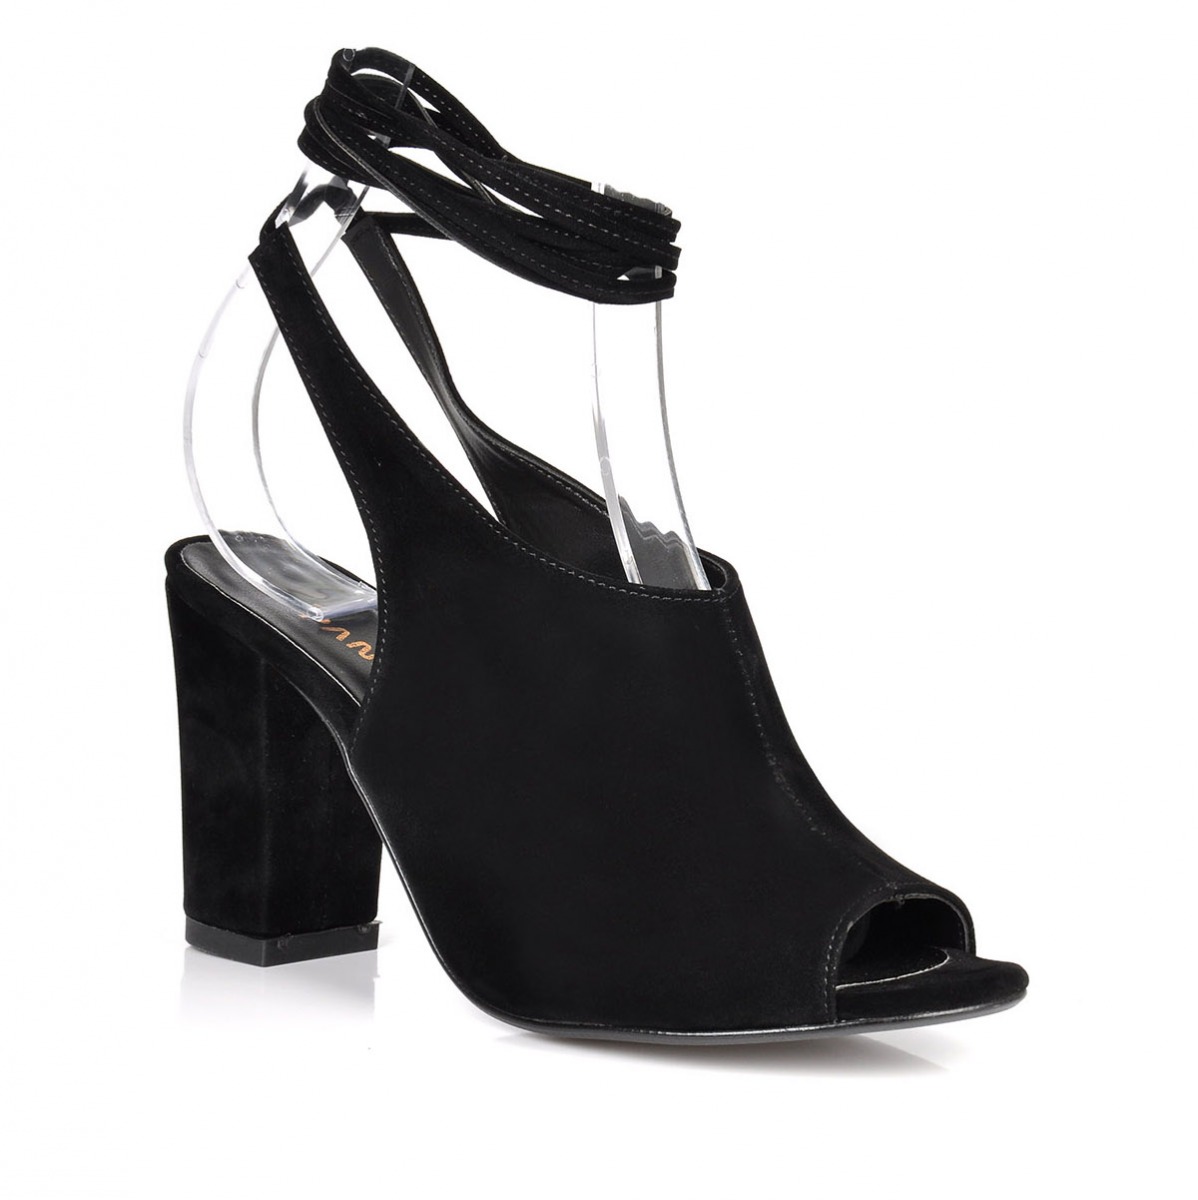 Flo Kadın  Siyah-Süet Klasik Topuklu Ayakkabı VZN-273Y. 2